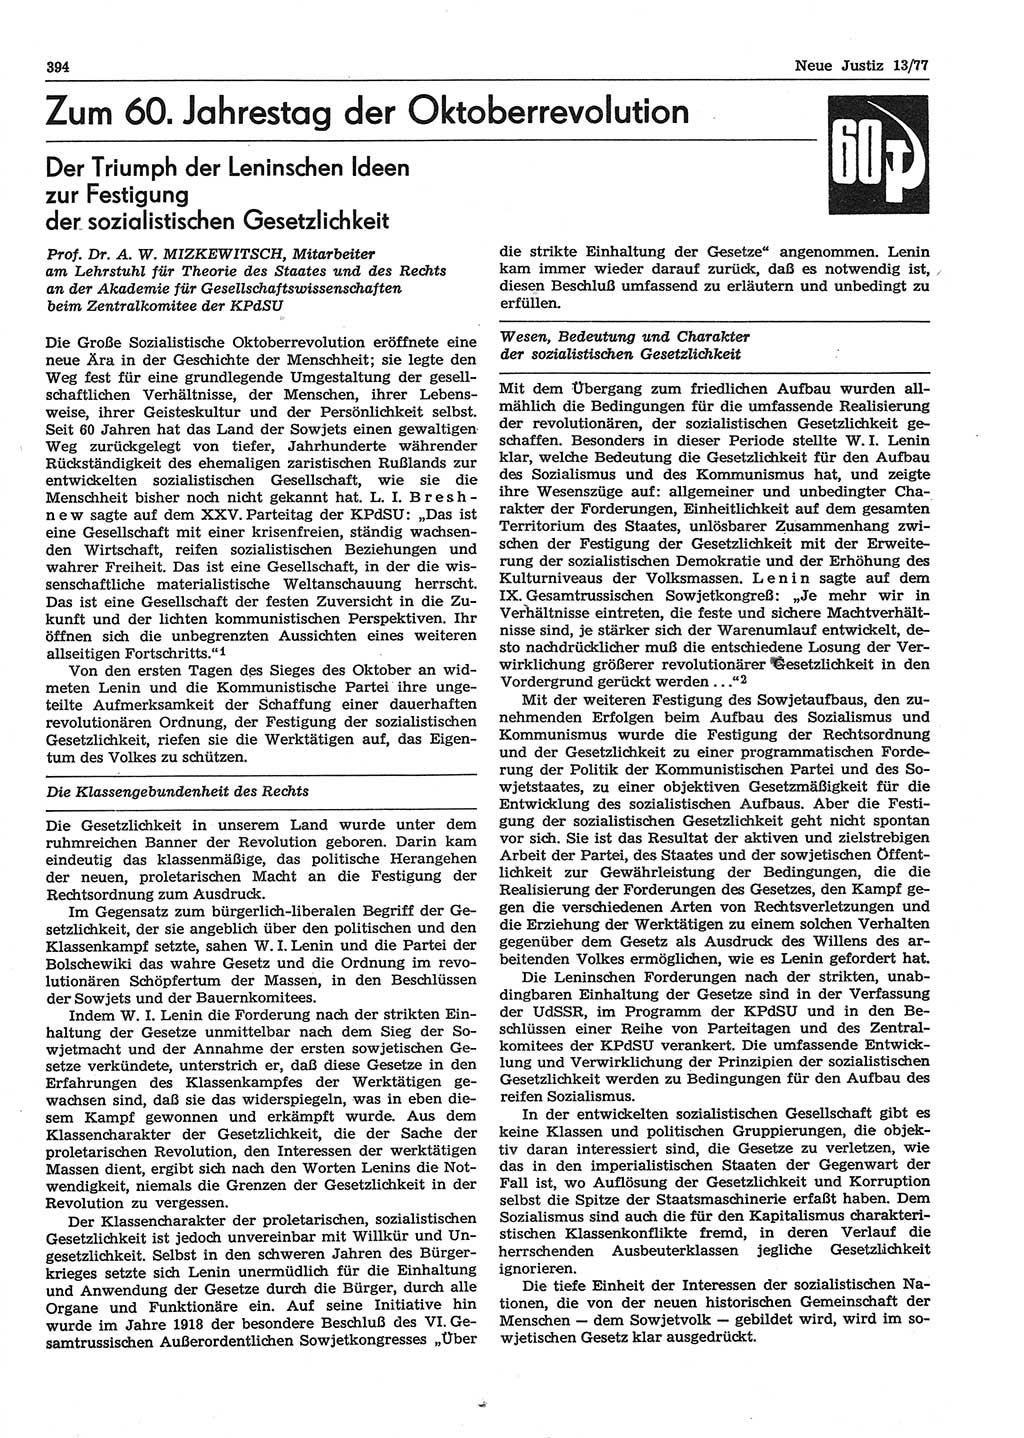 Neue Justiz (NJ), Zeitschrift für Recht und Rechtswissenschaft-Zeitschrift, sozialistisches Recht und Gesetzlichkeit, 31. Jahrgang 1977, Seite 394 (NJ DDR 1977, S. 394)